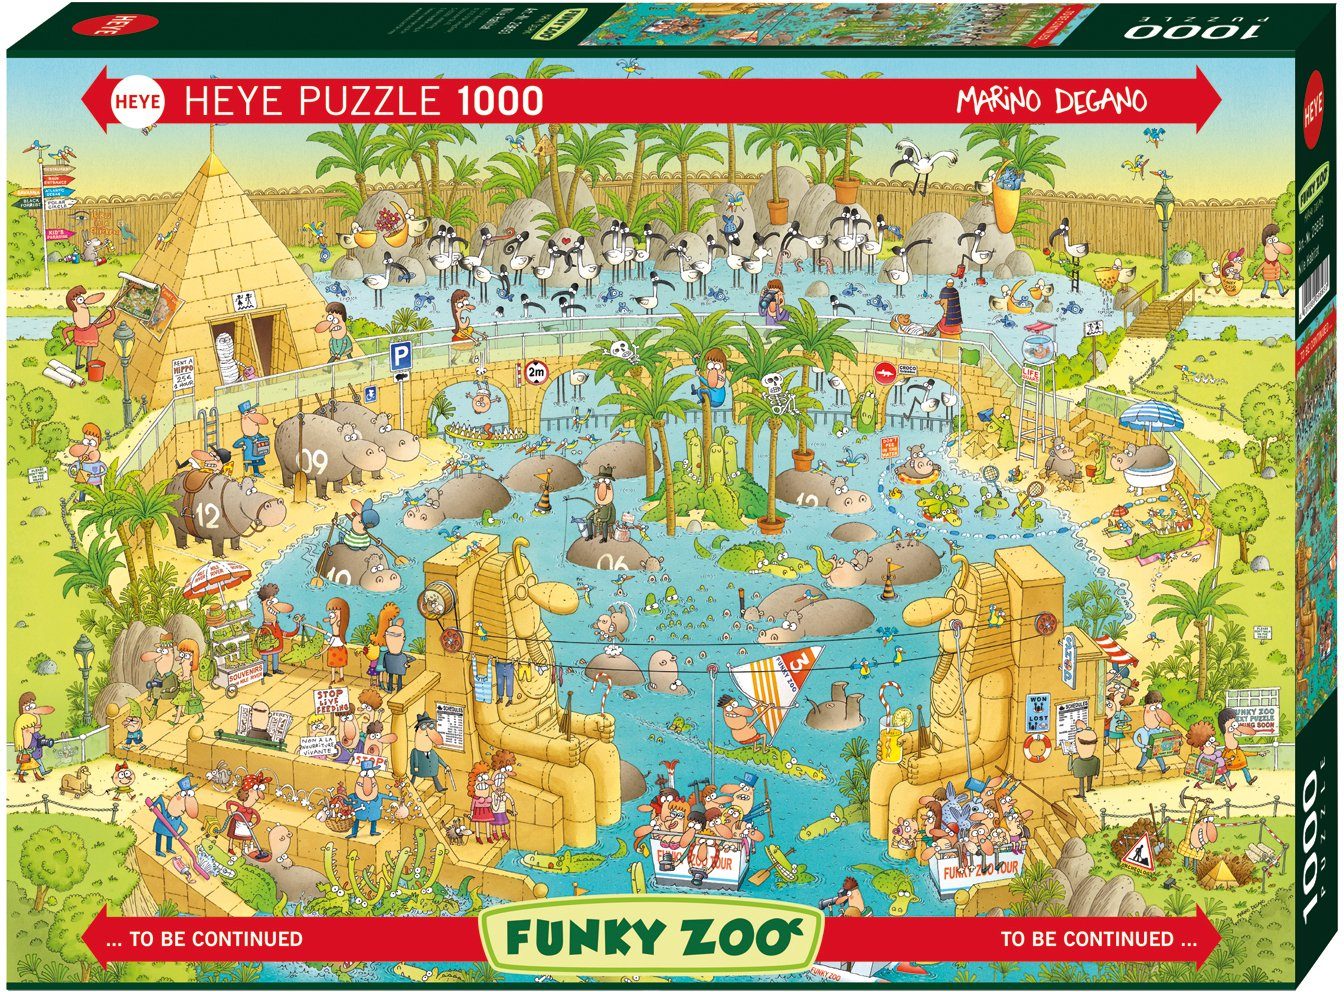 HEYE Puzzle Nile Habitat, 1000 in Made Germany Puzzleteile